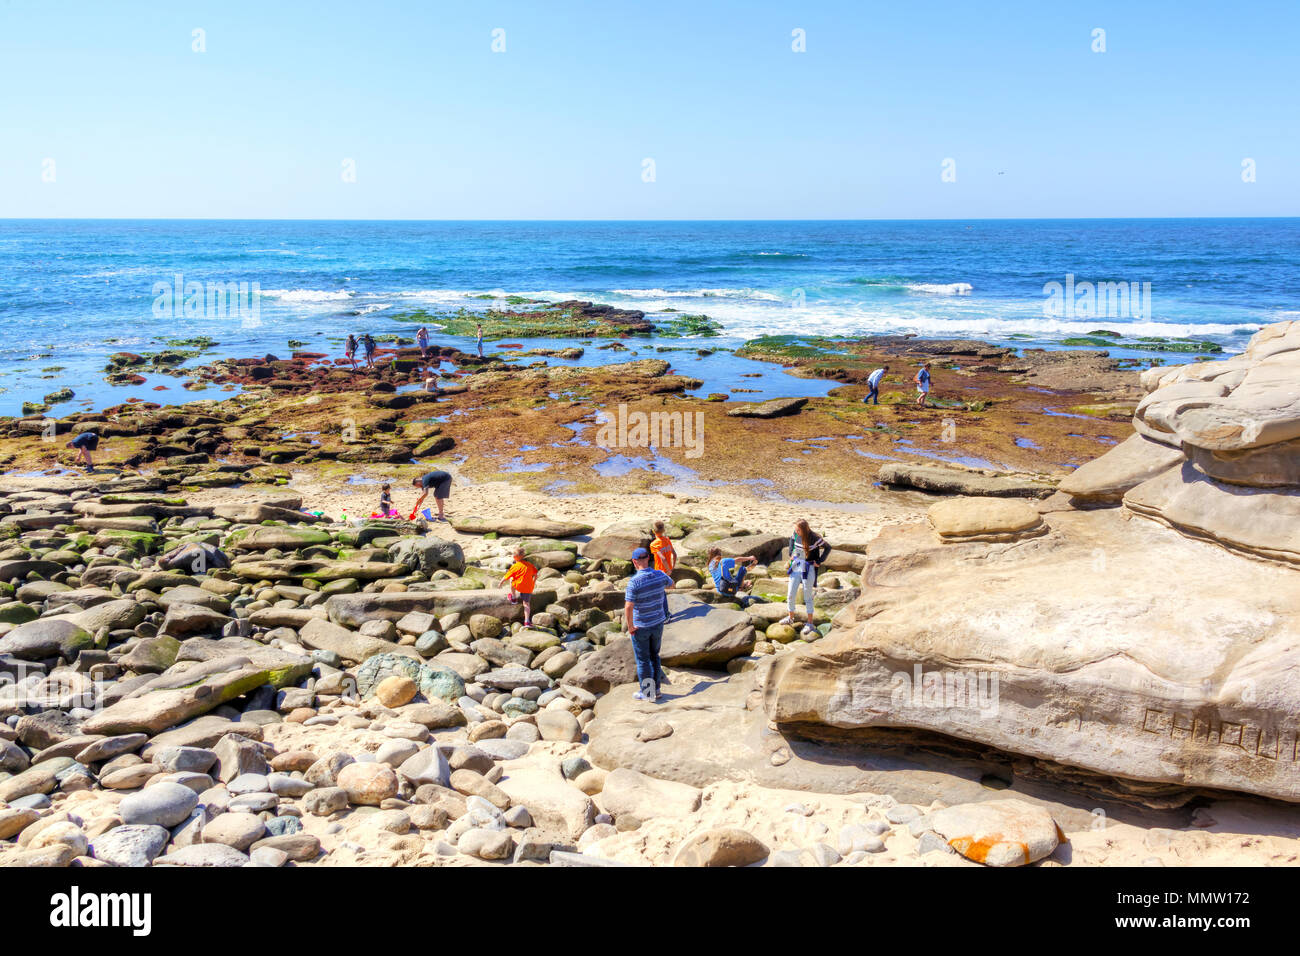 SAN DIEGO, États-unis - MAR 27, 2018 : les visiteurs des méandres de la plage de la ville balnéaire de La Jollan à San Diego, Californie. Banque D'Images